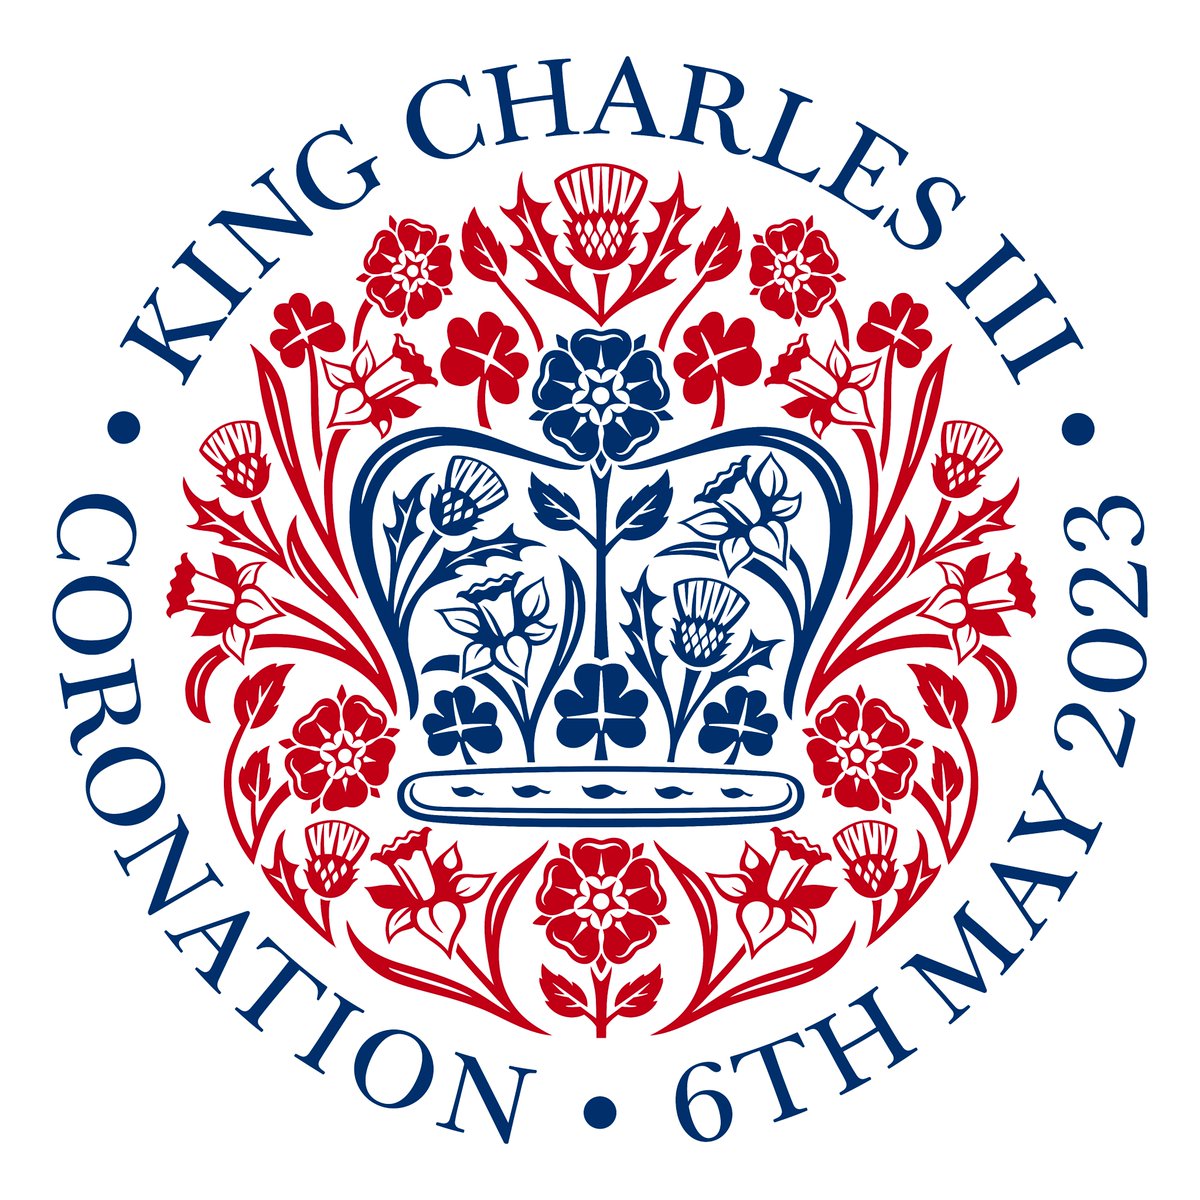 チャールズ新国王の戴冠式のエンブレムが決定。
国王の自然への愛に敬意を表して、イングランドのチューダーローズ、スコットランドのアザミ、ウェールズの水仙、アイルランドのクローバーをベースにしたデザイン。
連合王国の一体性を呼びかける素晴らしいデザイン。 